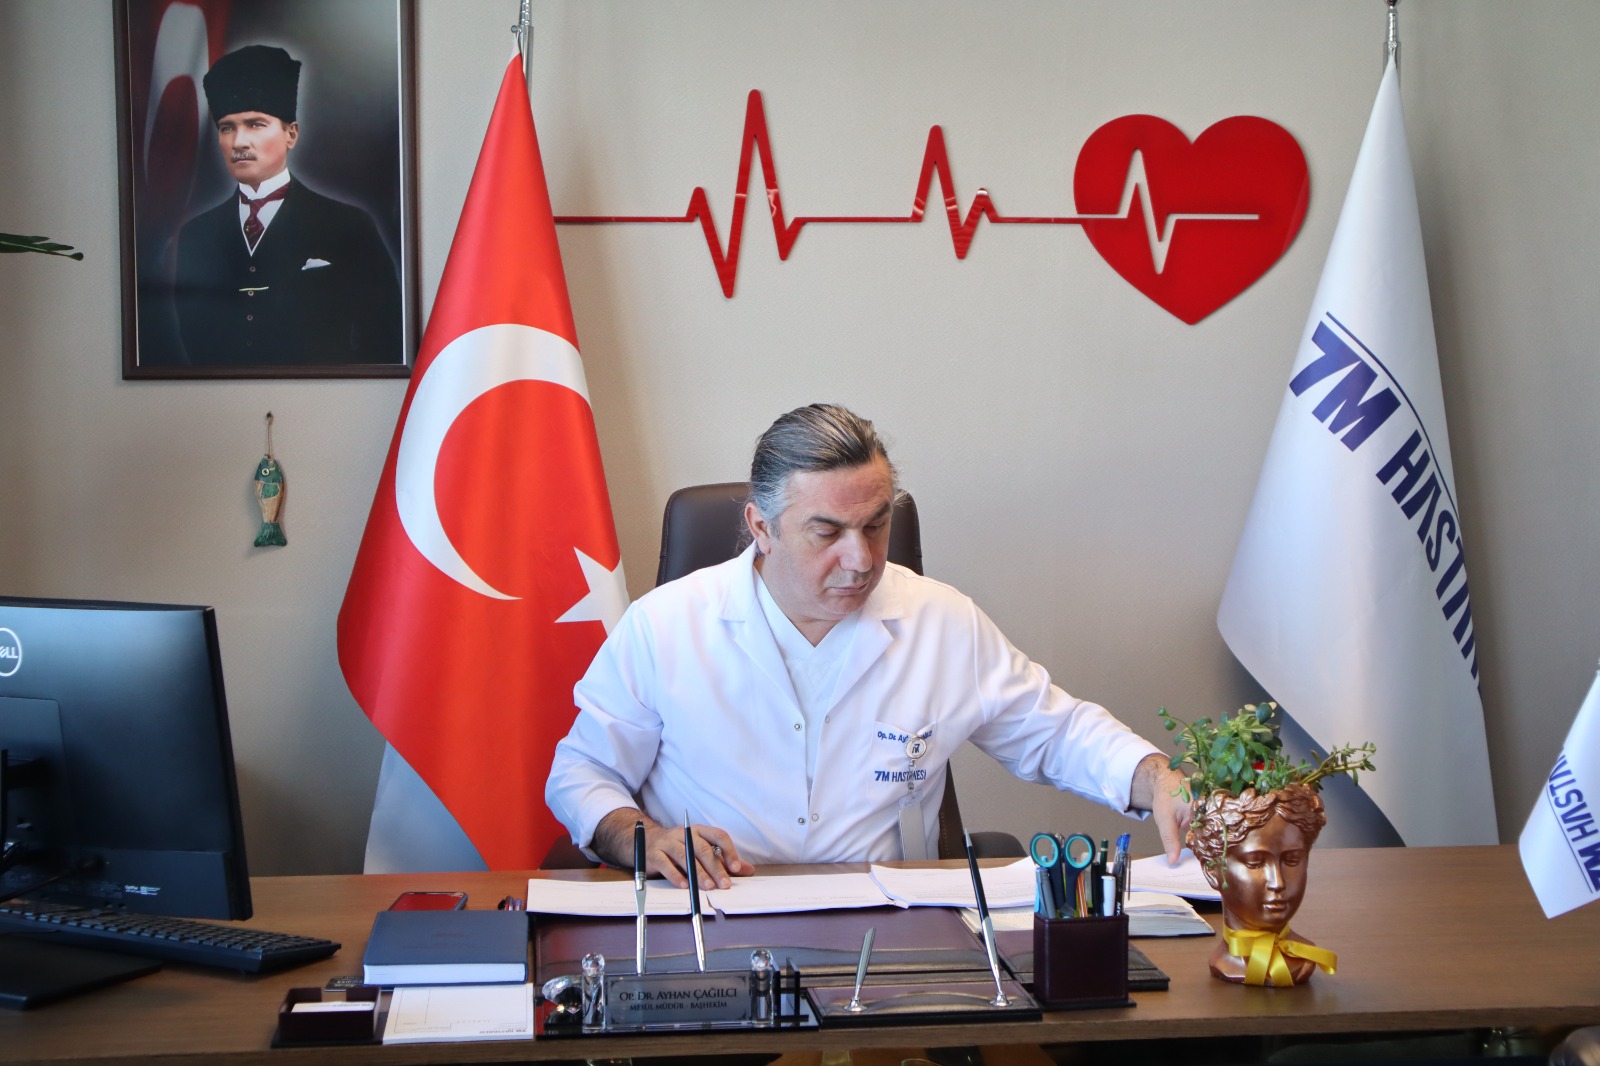 Özel 7M Hastanesi Trabzon’da birçok ilke imza attı